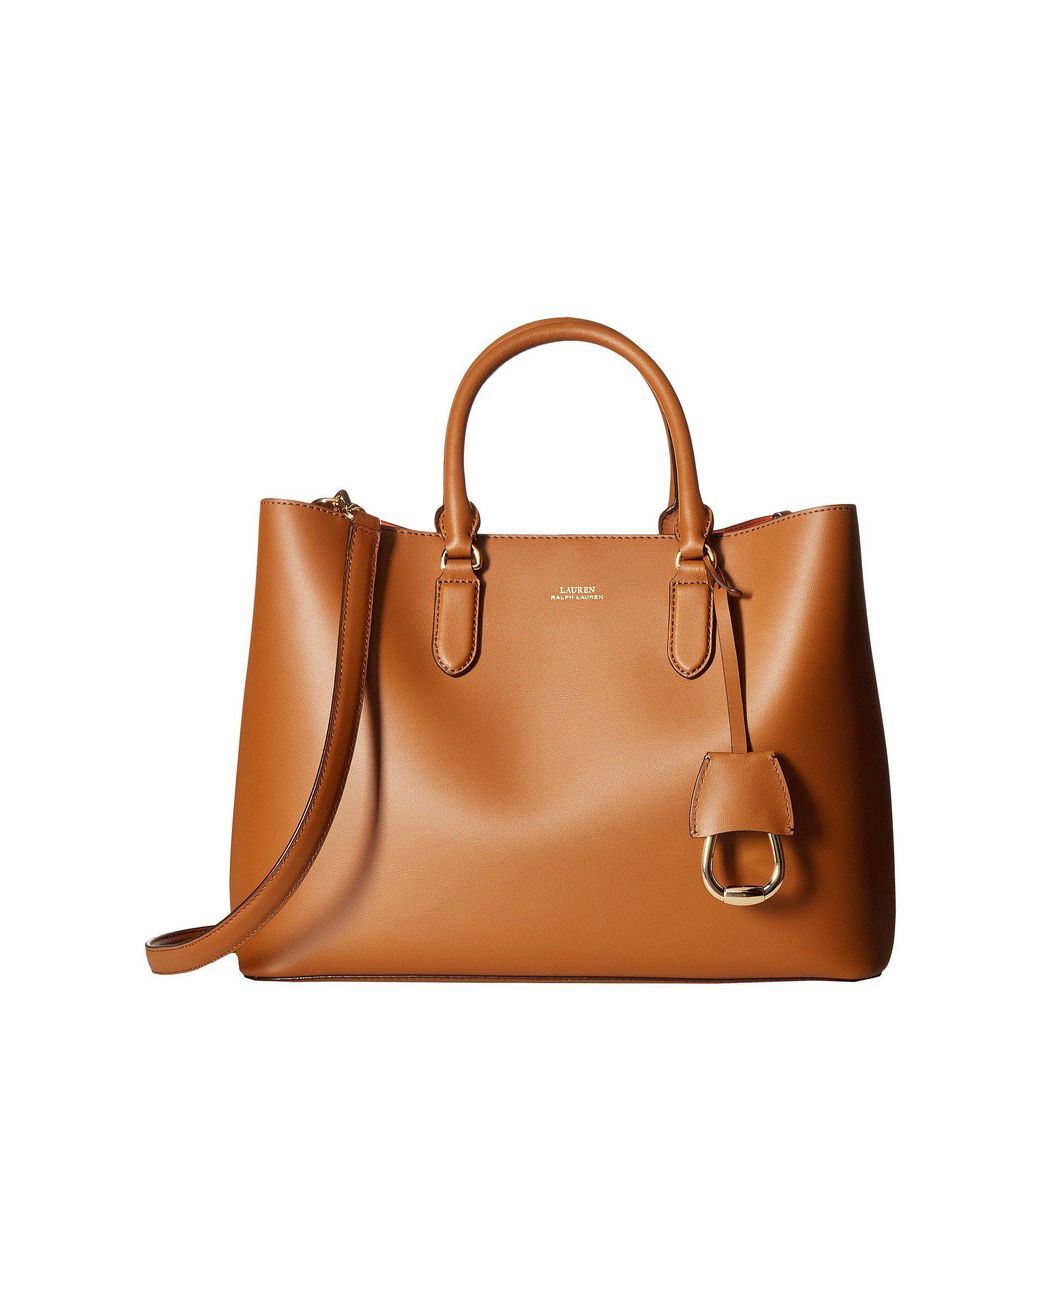 Lauren by Ralph Lauren Dryden Marcy Satchel Large (field Brown/orange)  Satchel Handbags | Lyst